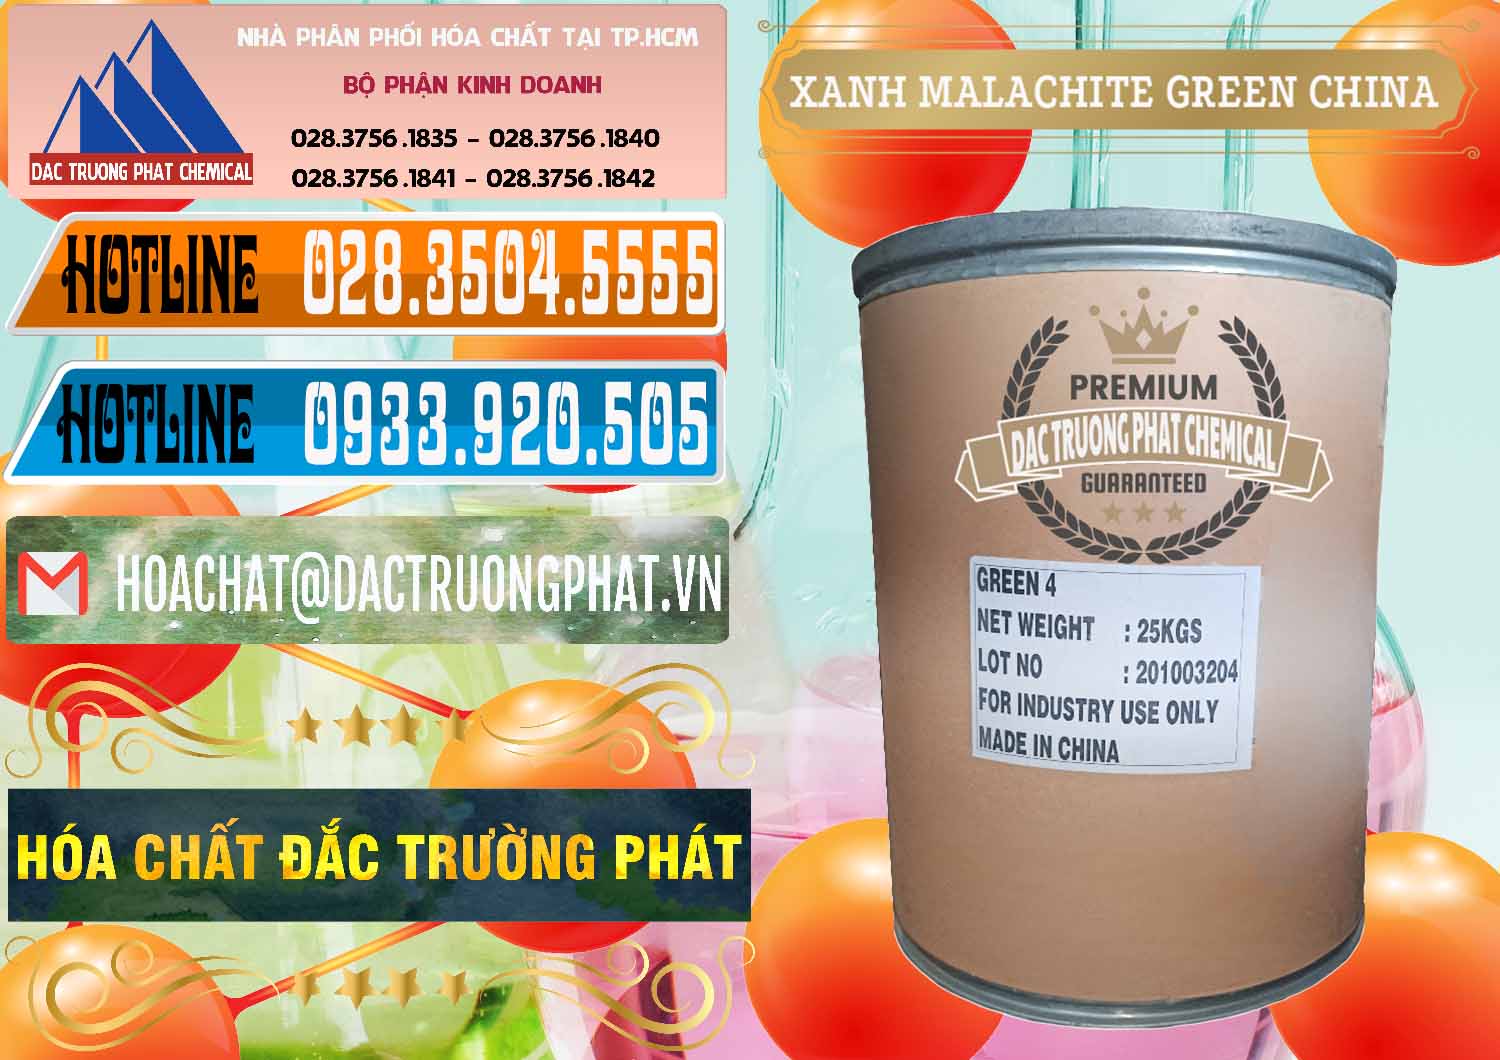 Công ty chuyên bán _ phân phối Xanh Malachite Green Trung Quốc China - 0325 - Đơn vị cung cấp & kinh doanh hóa chất tại TP.HCM - stmp.net